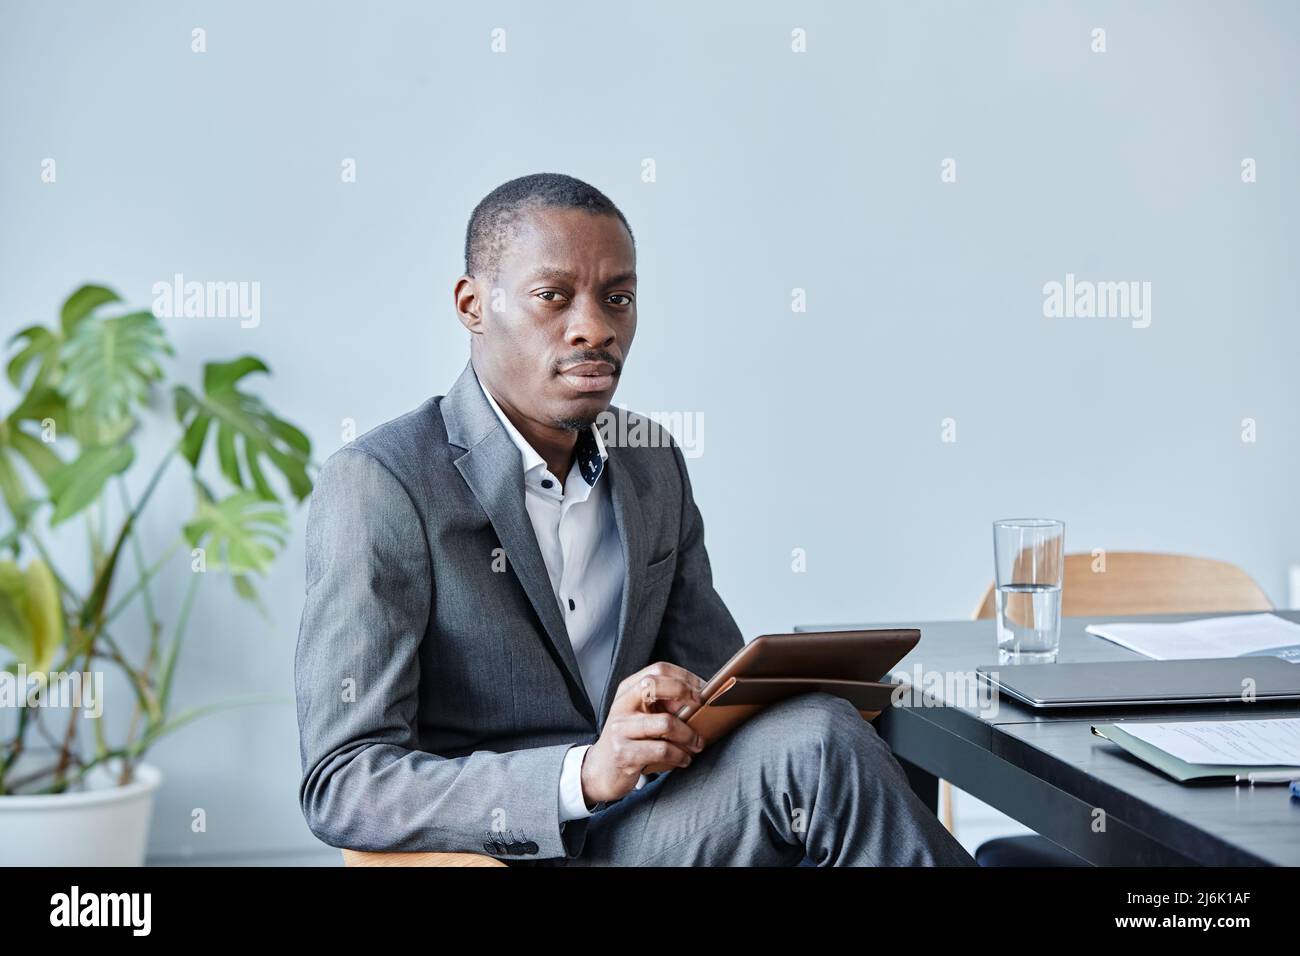 Minimalistisches Porträt eines professionellen schwarzen Executive, der die Kamera anschaut, während er am Arbeitsplatz im Büro gegen eine blaue Wand sitzt und einen eleganten Anzug, CO, trägt Stockfoto